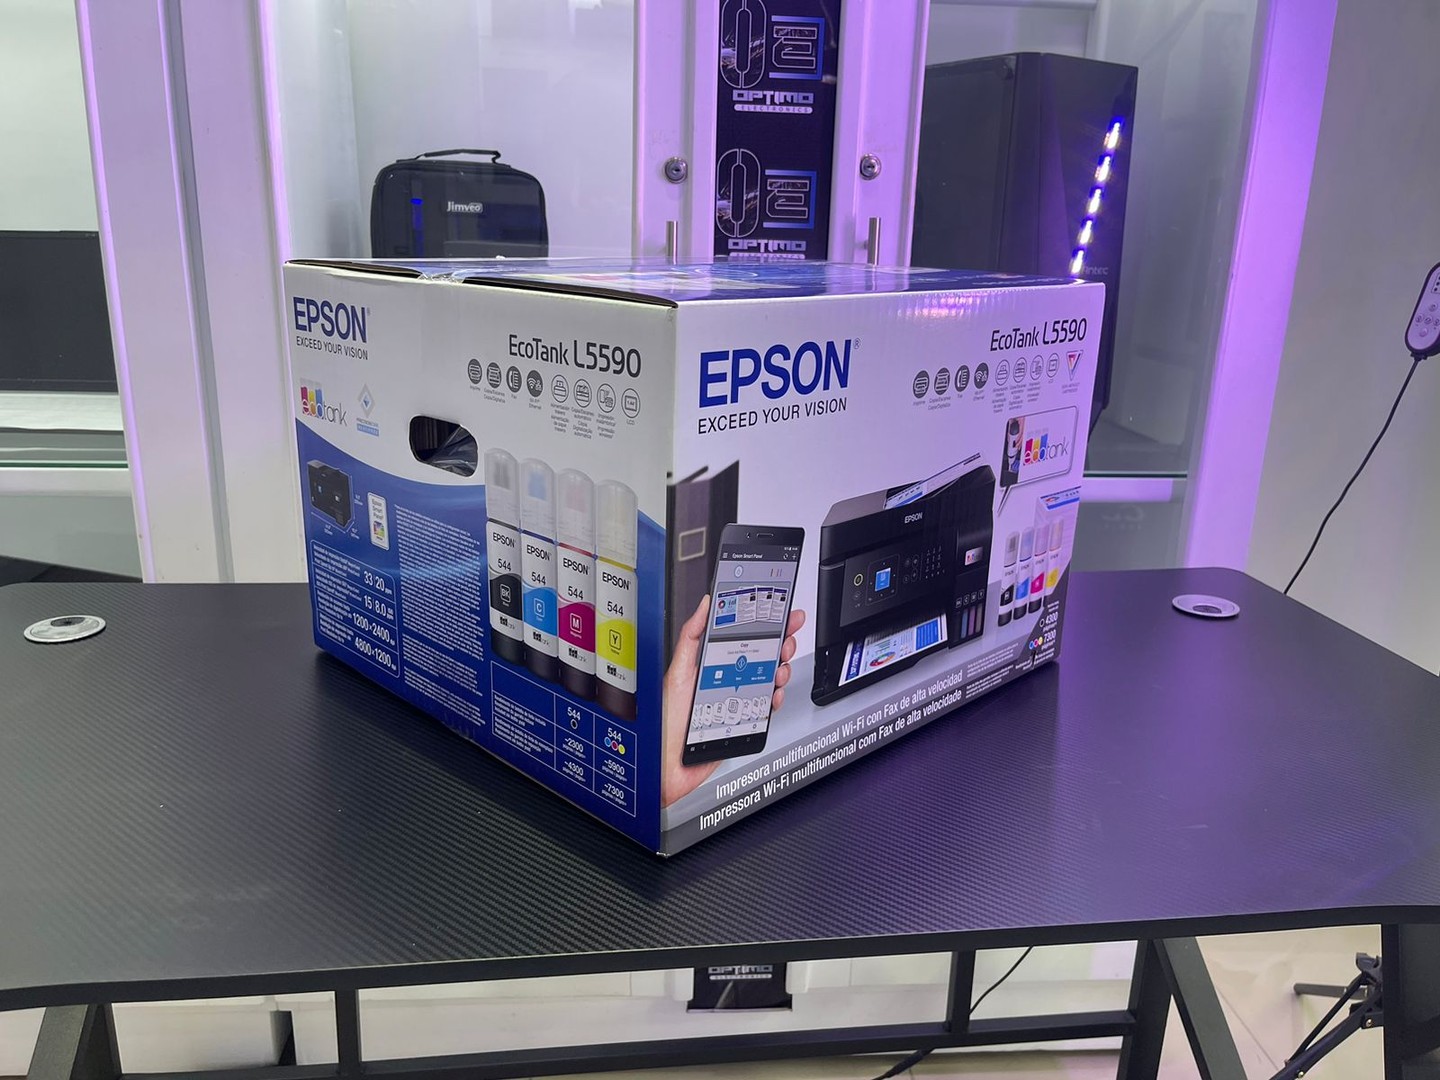 impresoras y scanners - Multifuncion Epson L5990 con scaneado automatico 2